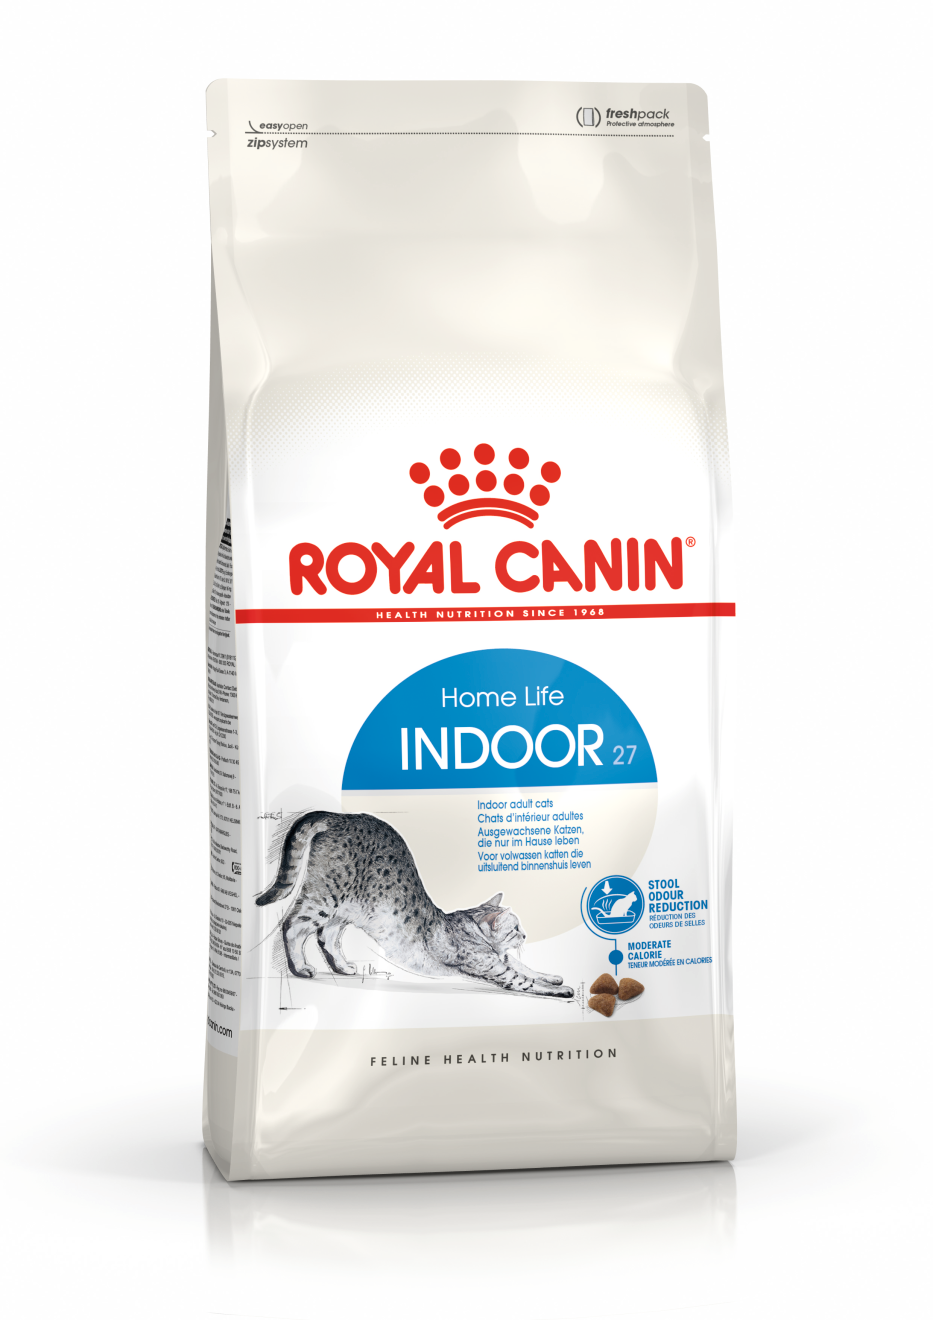 royal canin kitten sterilised 10kg